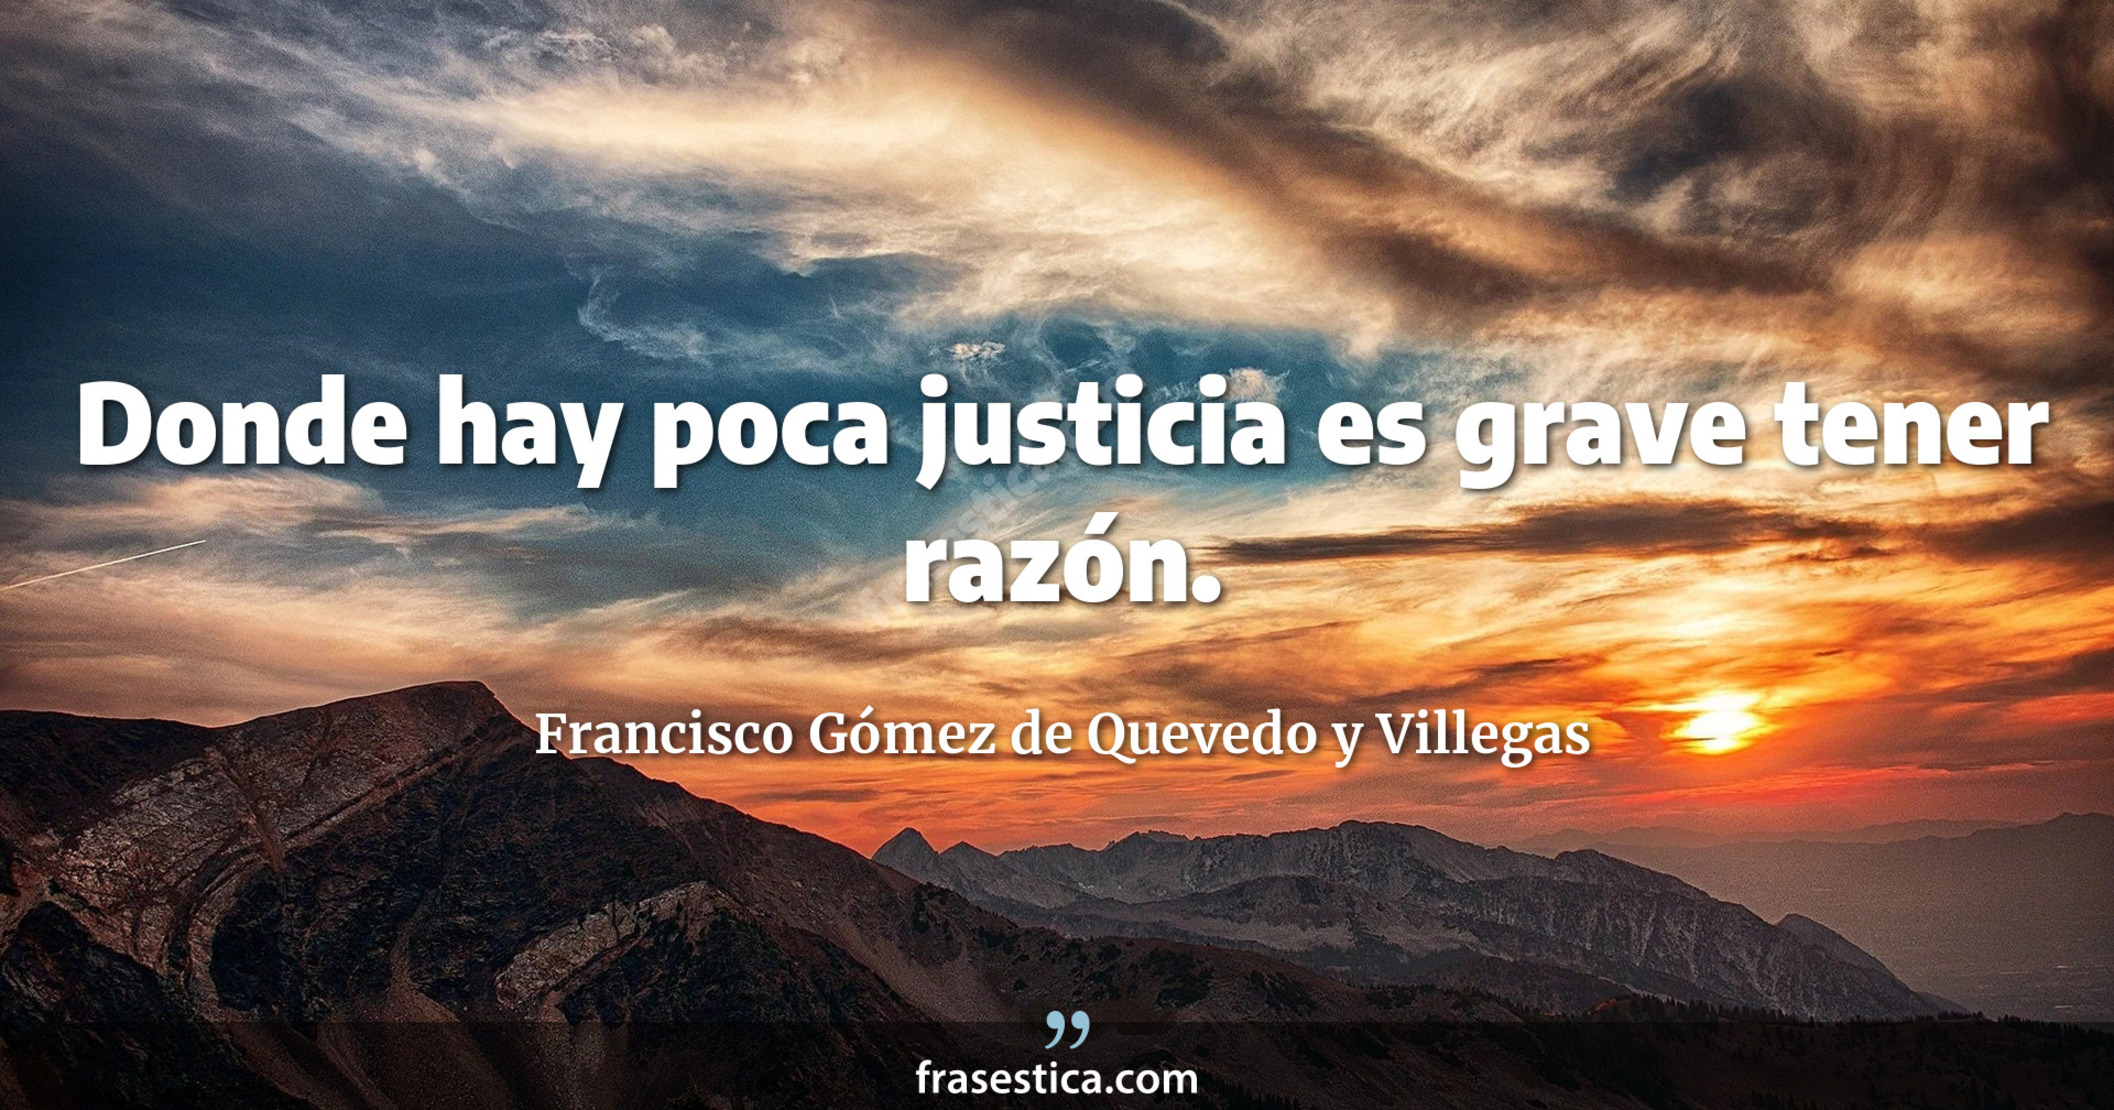 Donde hay poca justicia es grave tener razón. - Francisco Gómez de Quevedo y Villegas